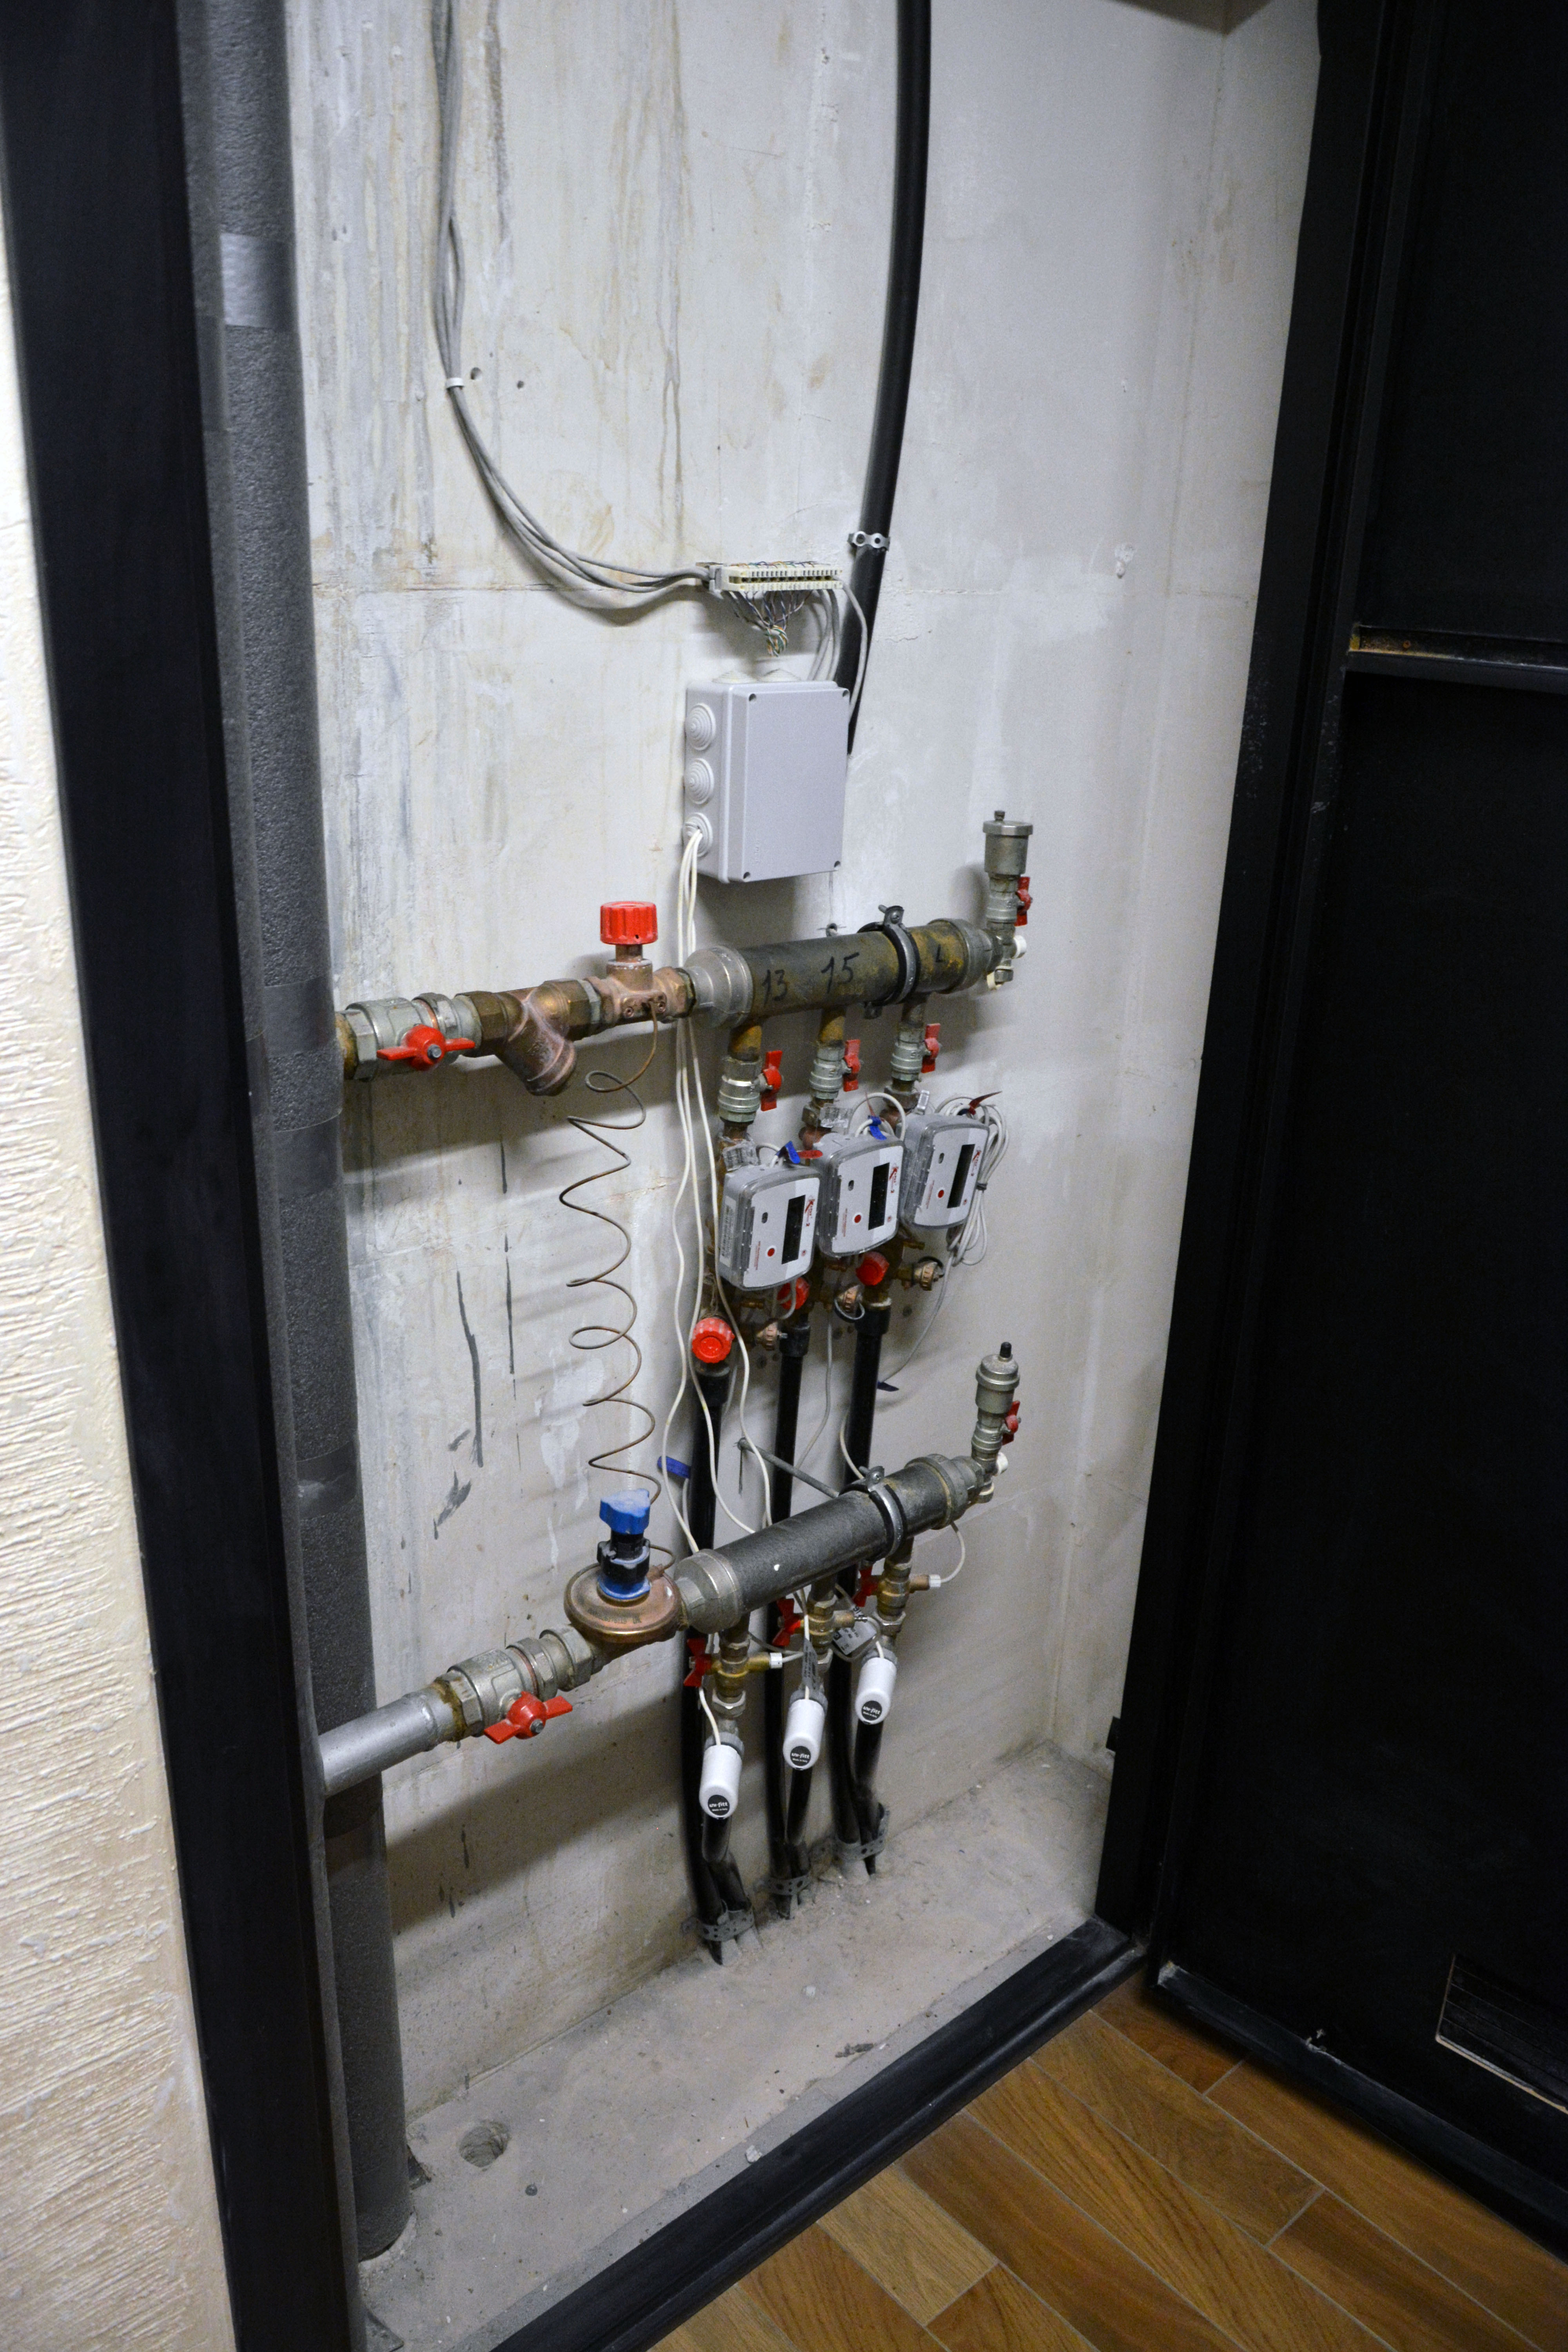 Электроприводы вентилей, регулирующие поступление теплоносителя в систему отопления квартир. Чуть выше установлены счетчики тепла. В сером герметичном корпусе – реле WB-MR6C